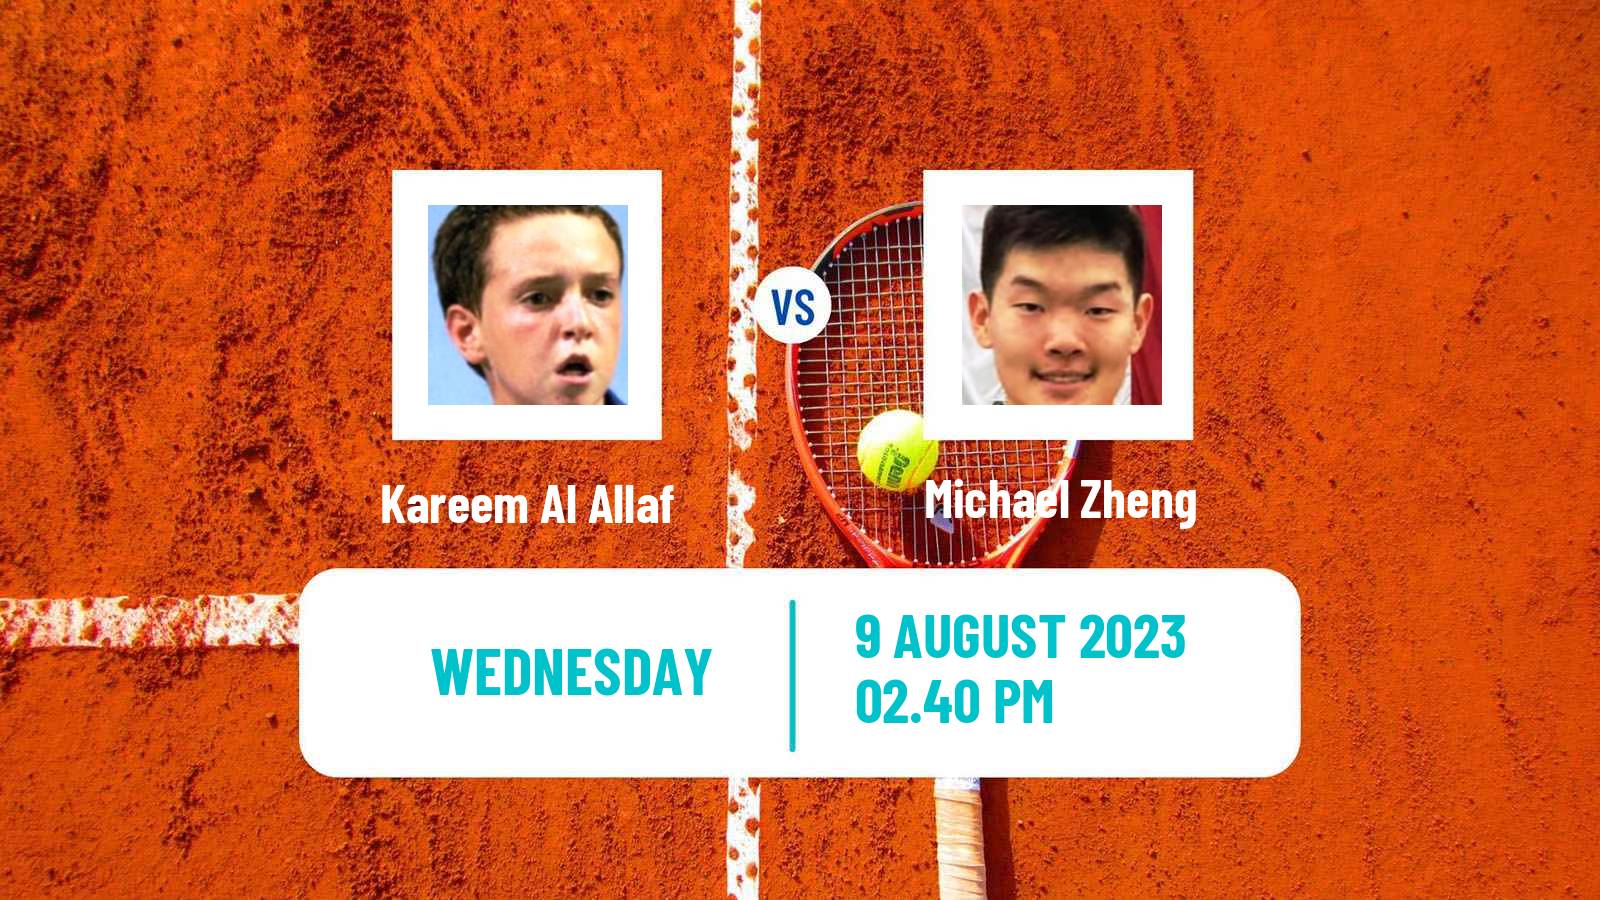 Tennis ITF M25 Southaven Ms Men Kareem Al Allaf - Michael Zheng